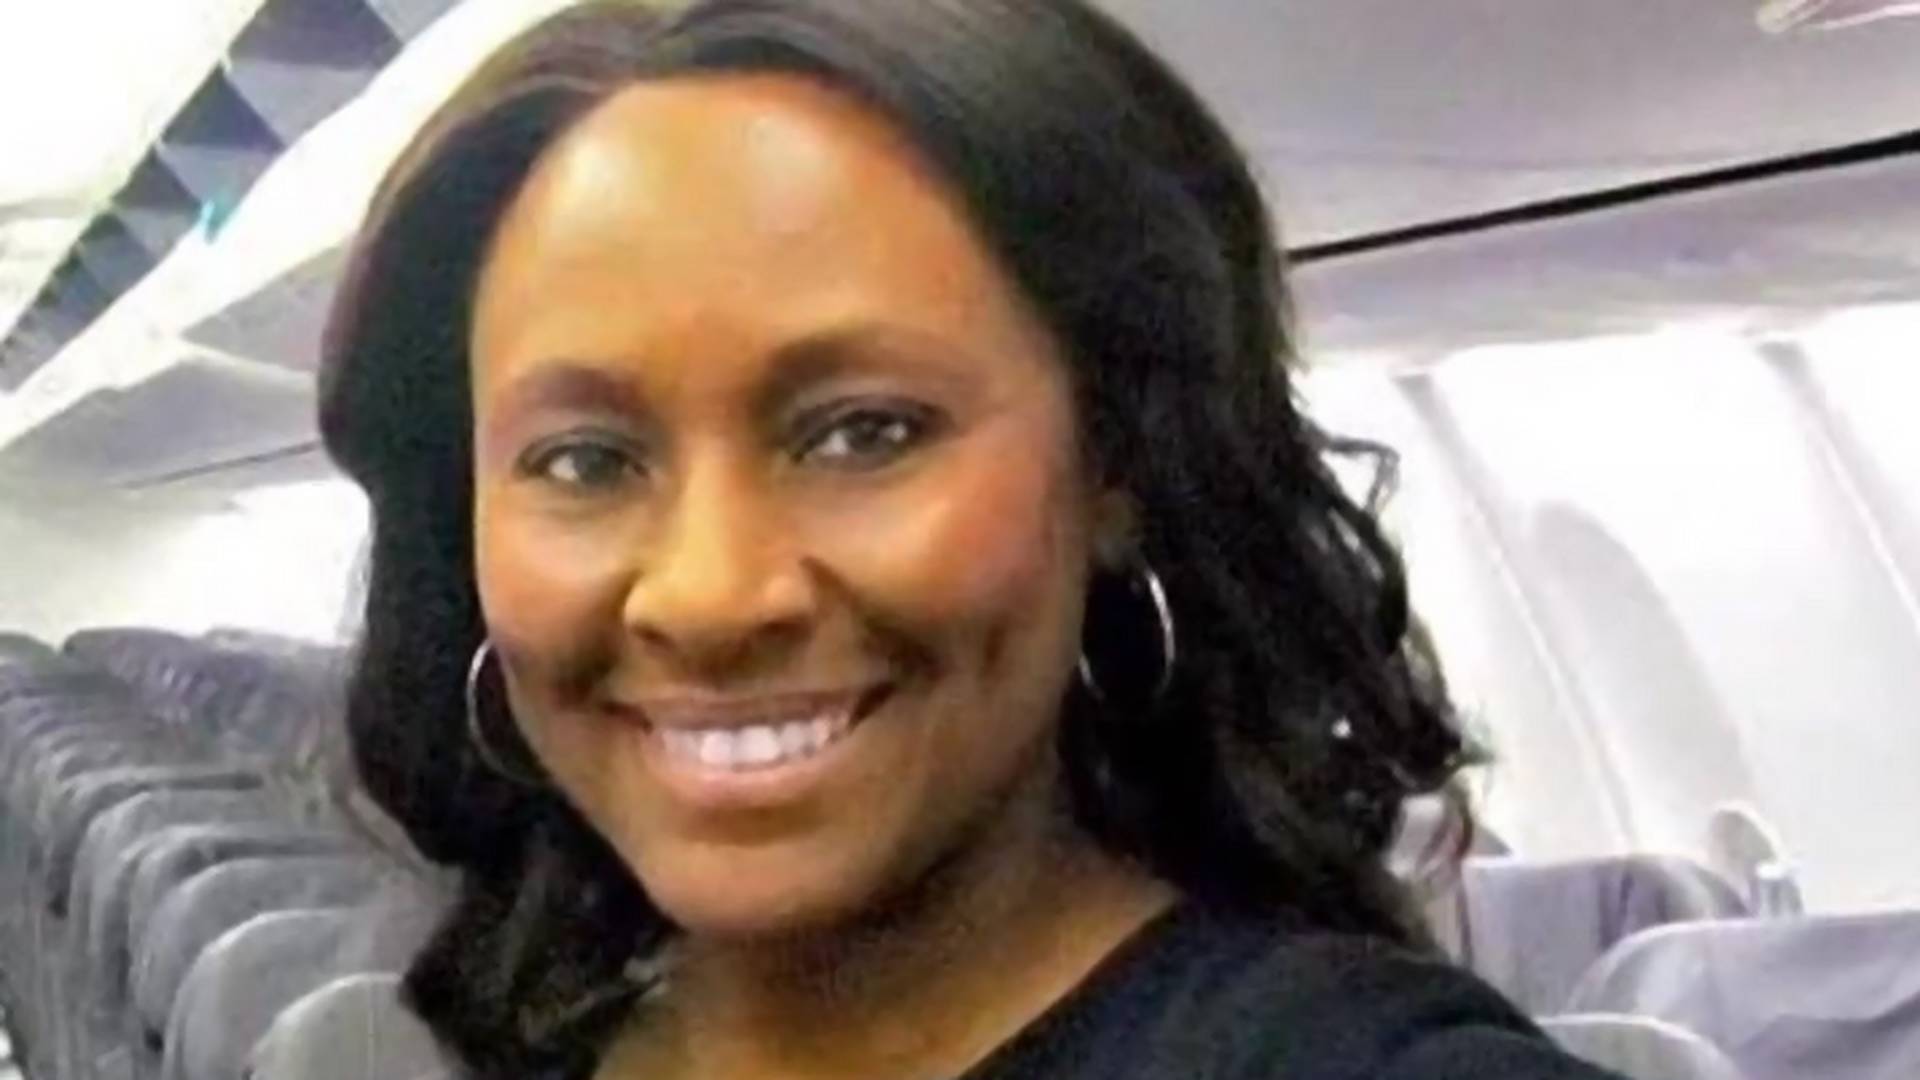 Stjuardesa spasla devojku od trgovine ljudima zahvaljujući tajnoj poruci